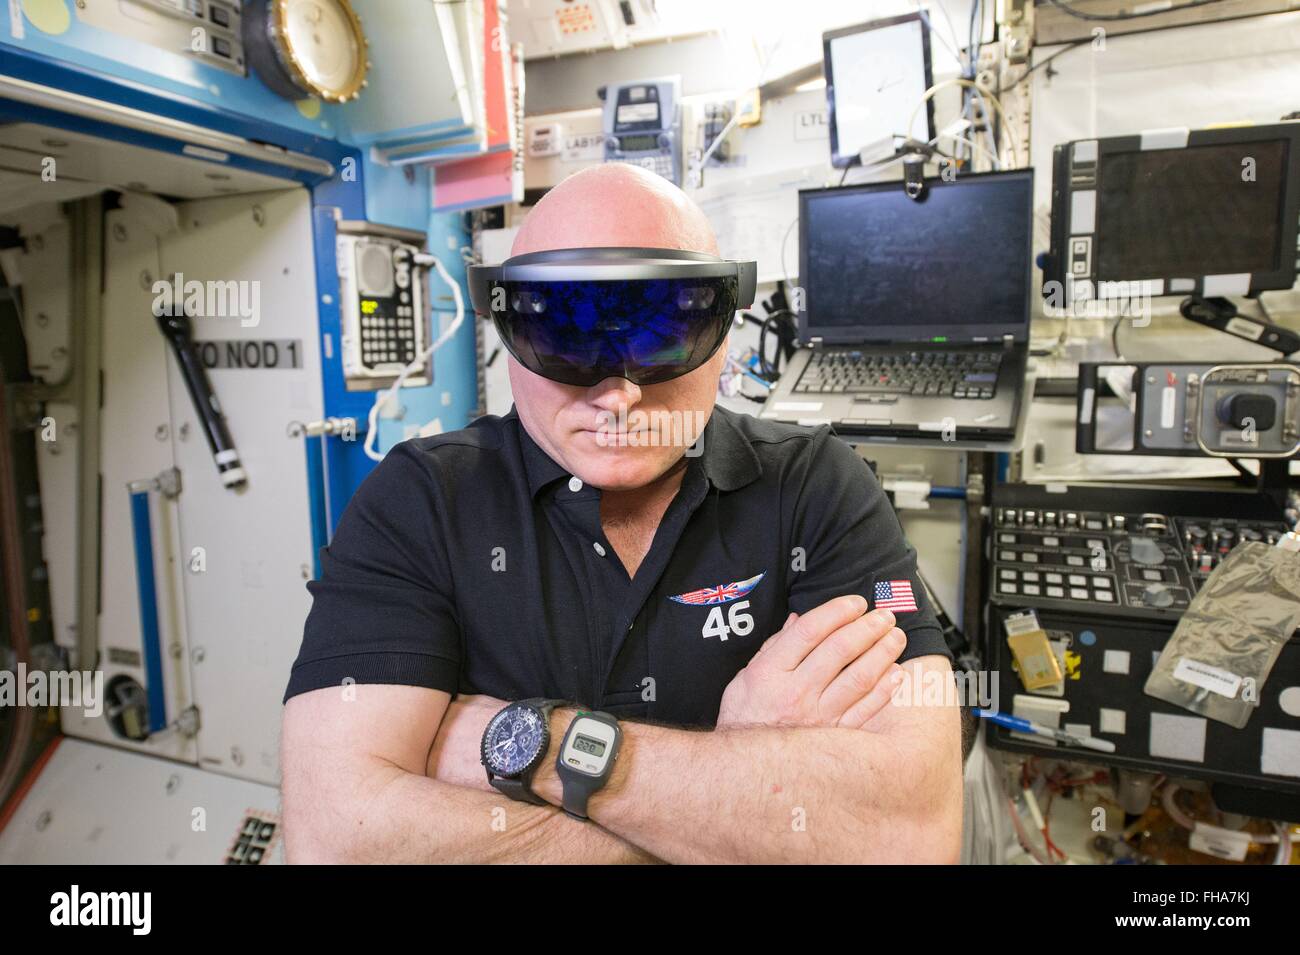 NASA-Astronaut Scott Kelly tragen virtual-Reality Brille Microsoft HoloLens an Bord an Bord der internationalen Raumstation ISS 20. Februar 2016 in der Erdumlaufbahn. Das Gerät ist Teil des NASA Projekt Sidekick die Erkundung ist den Einsatz von augmented Reality Crew Trainingsanforderungen reduzieren und die Effizienz bei der Astronauten im Weltraum arbeiten können. Stockfoto